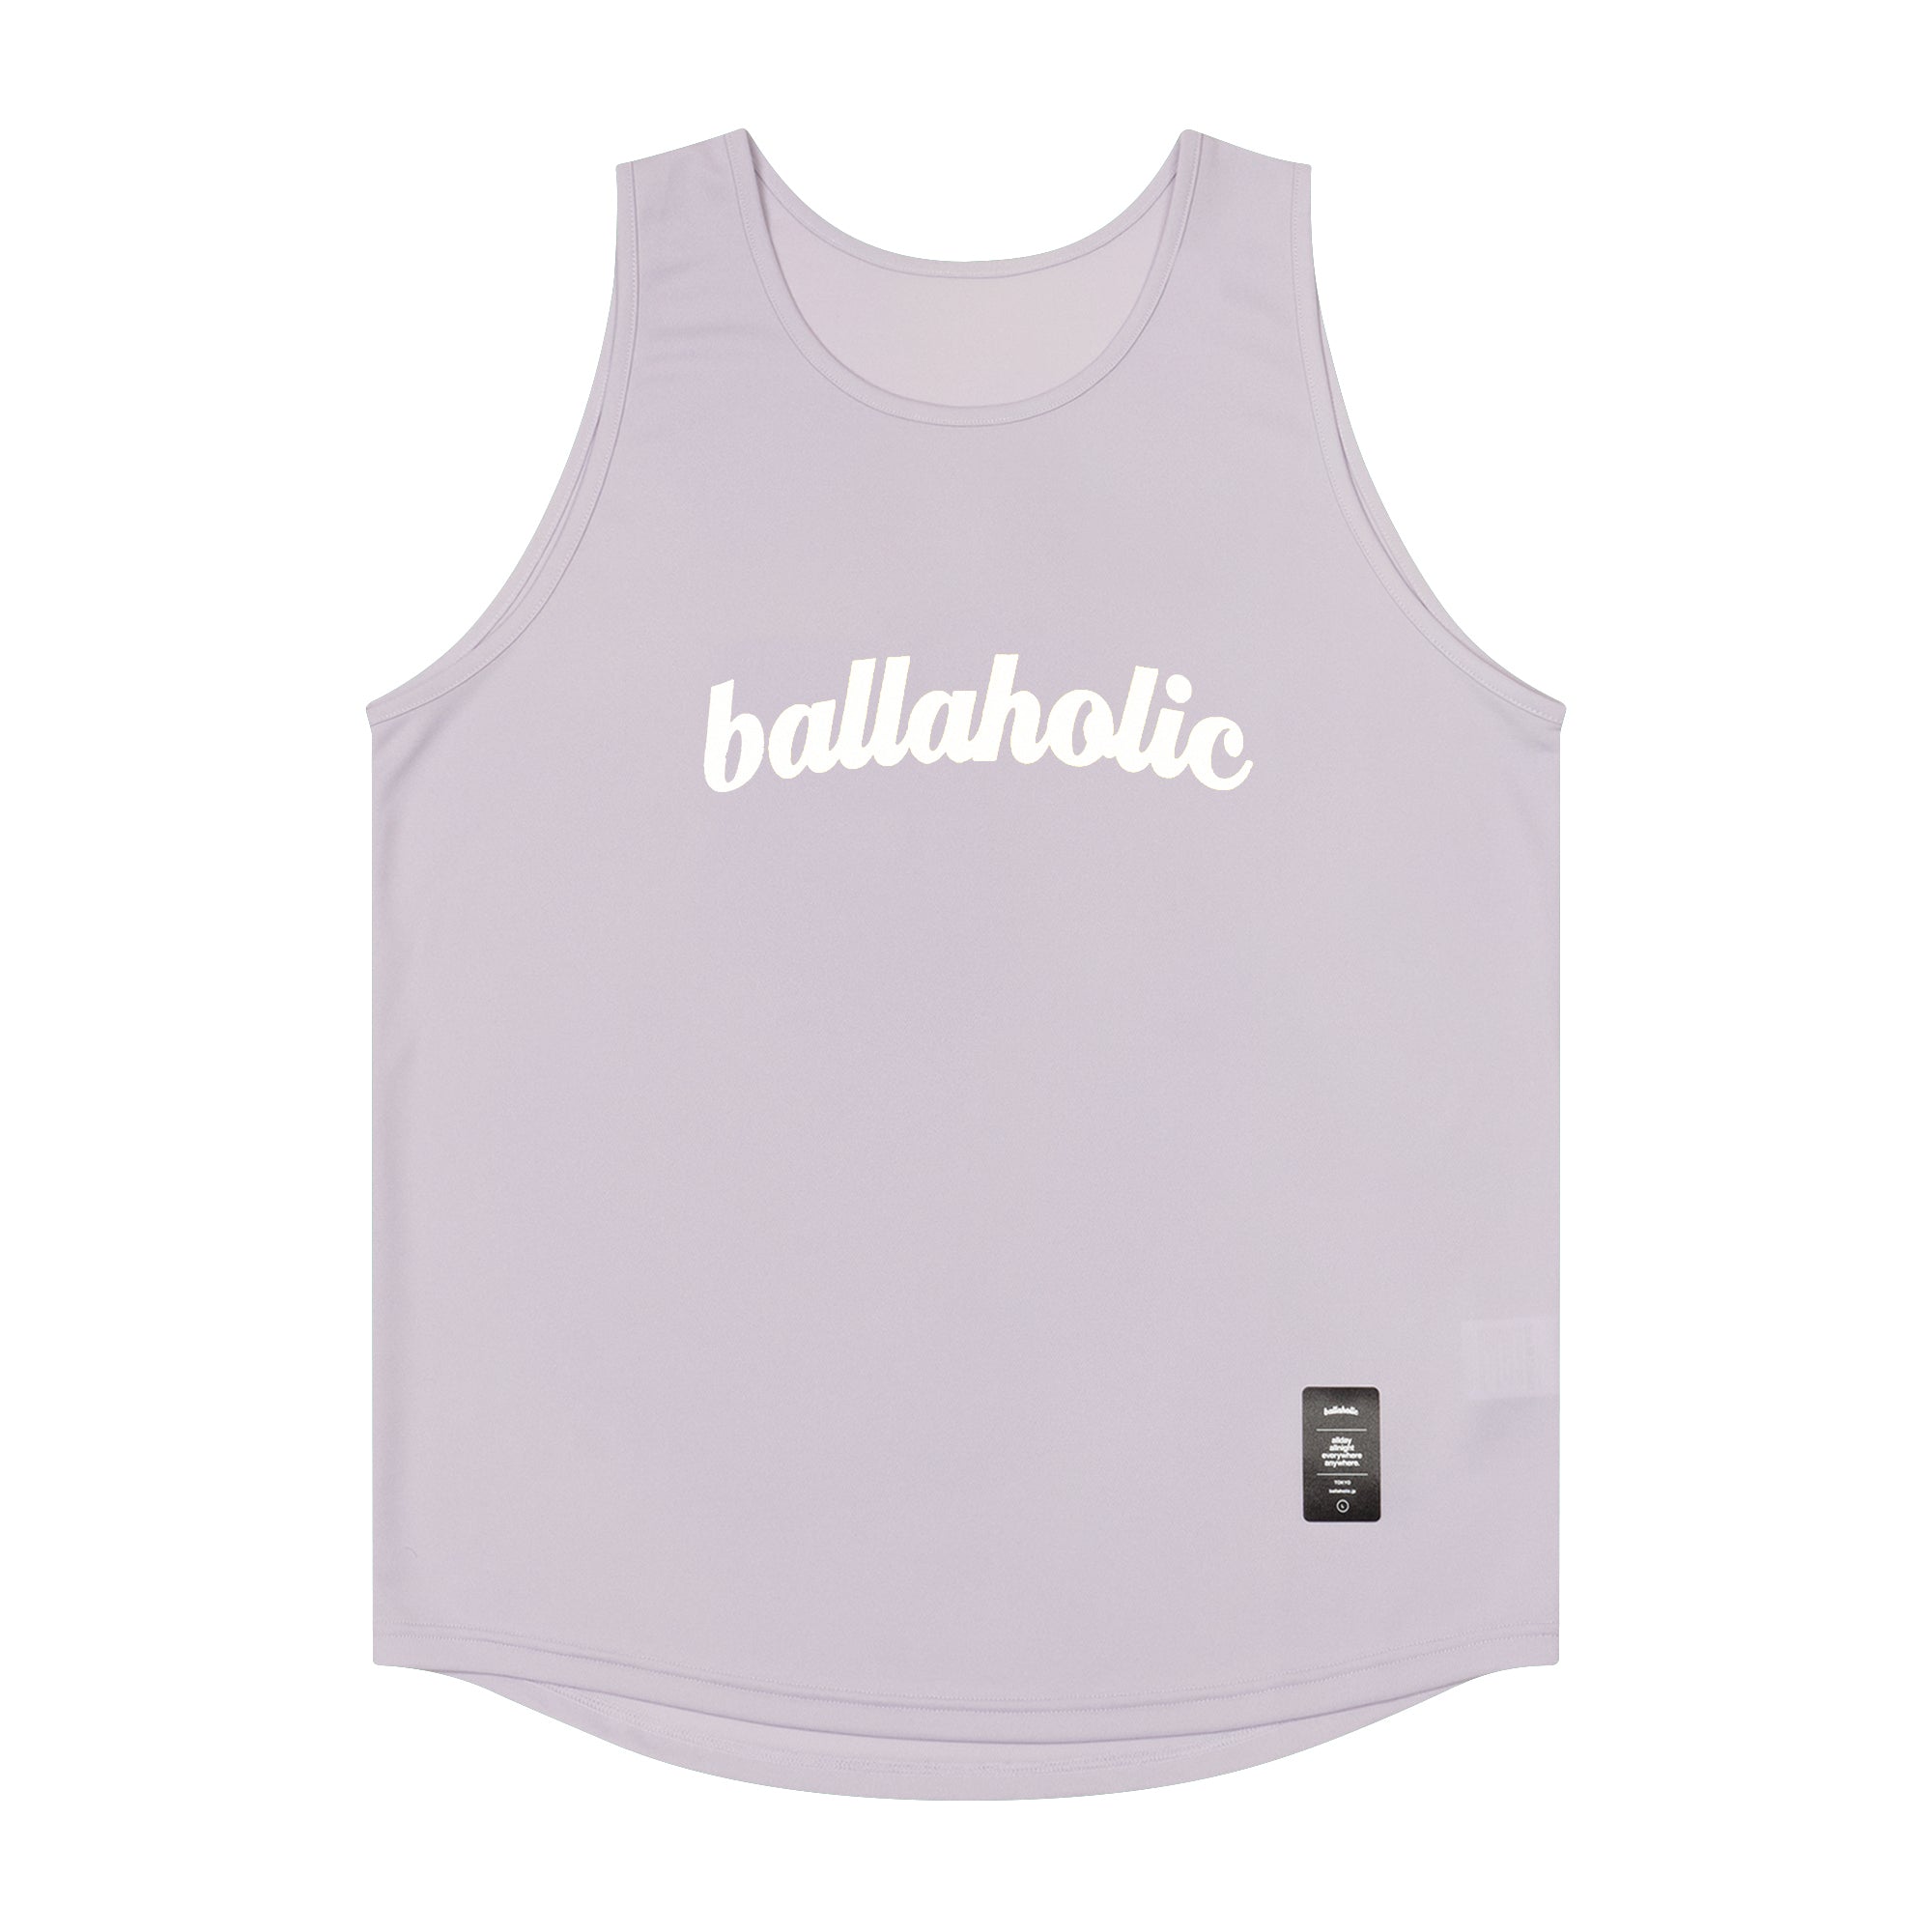 ballaholic × pigalle タンクトップ 2022 - ウェア